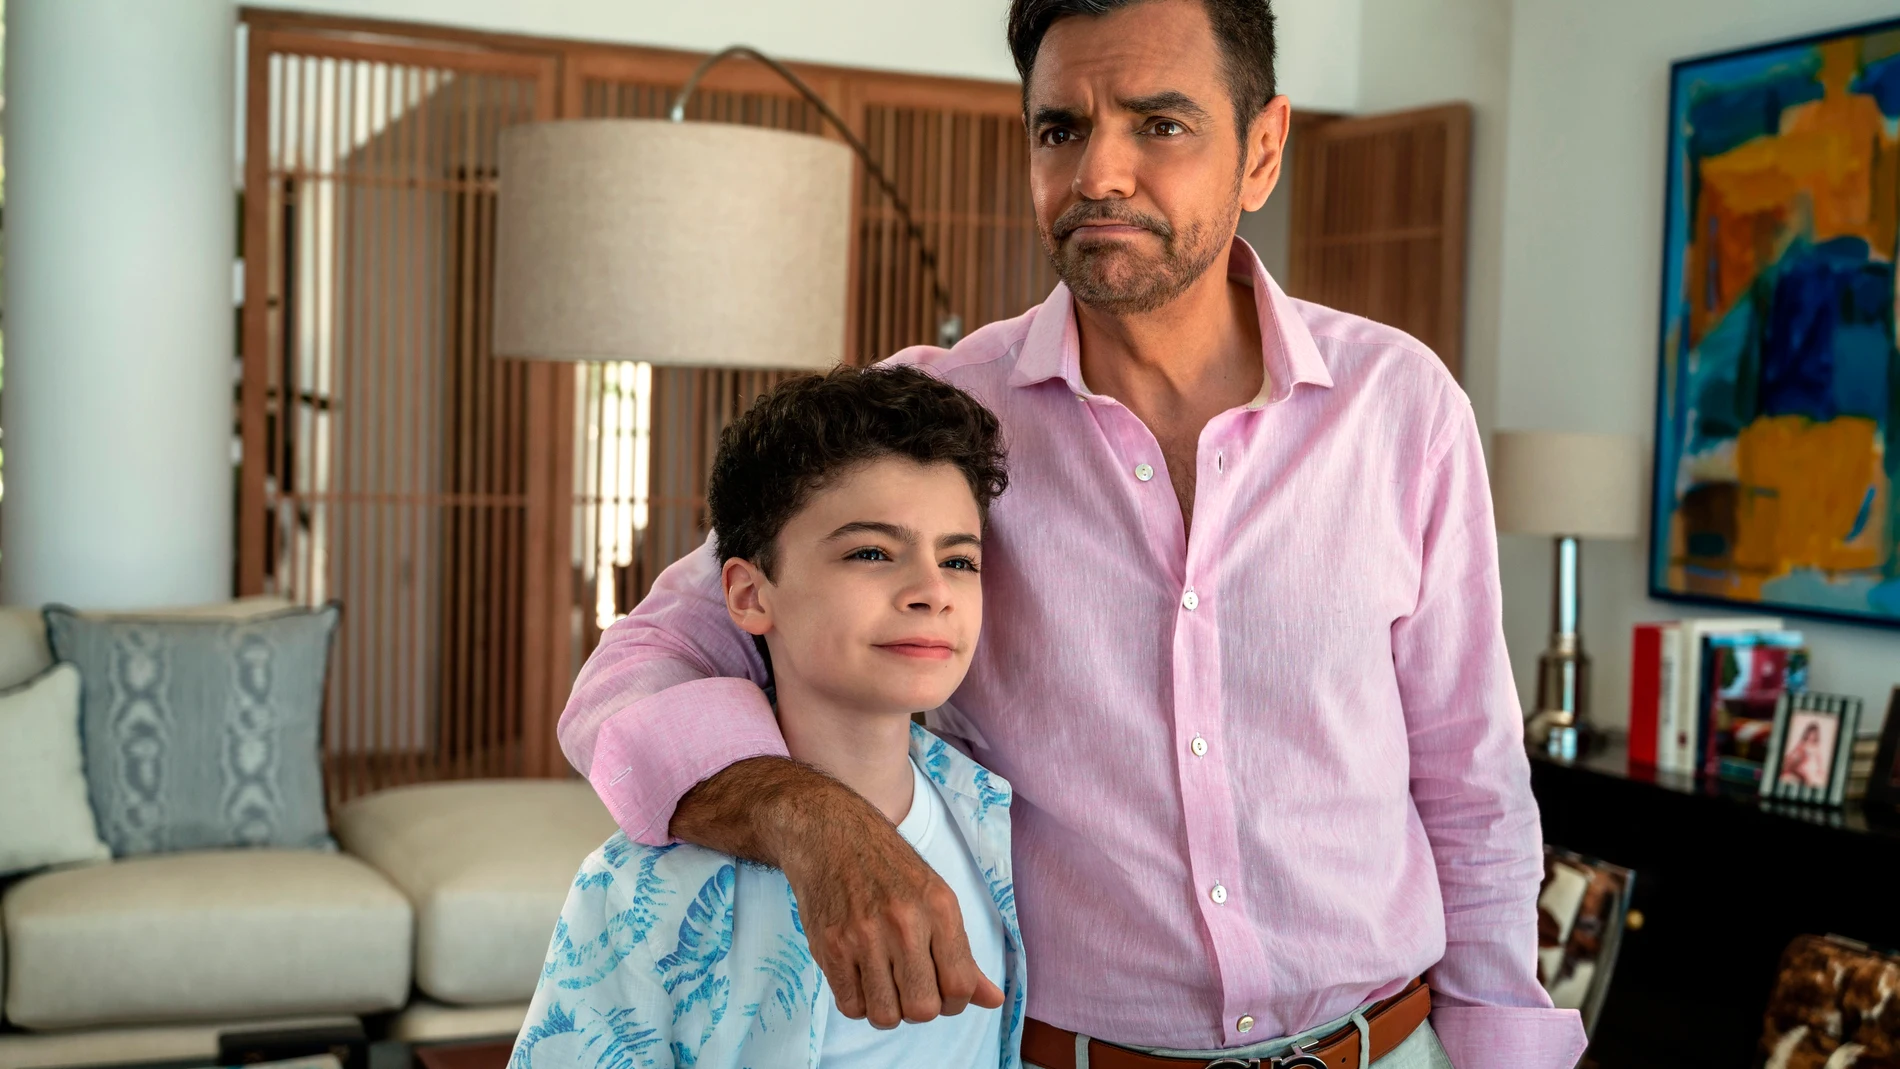 Fotograma de "Acapulco" donde aparece el actor mexicano Eugenio Derbez y el niño canadiense Raphael Alejandro